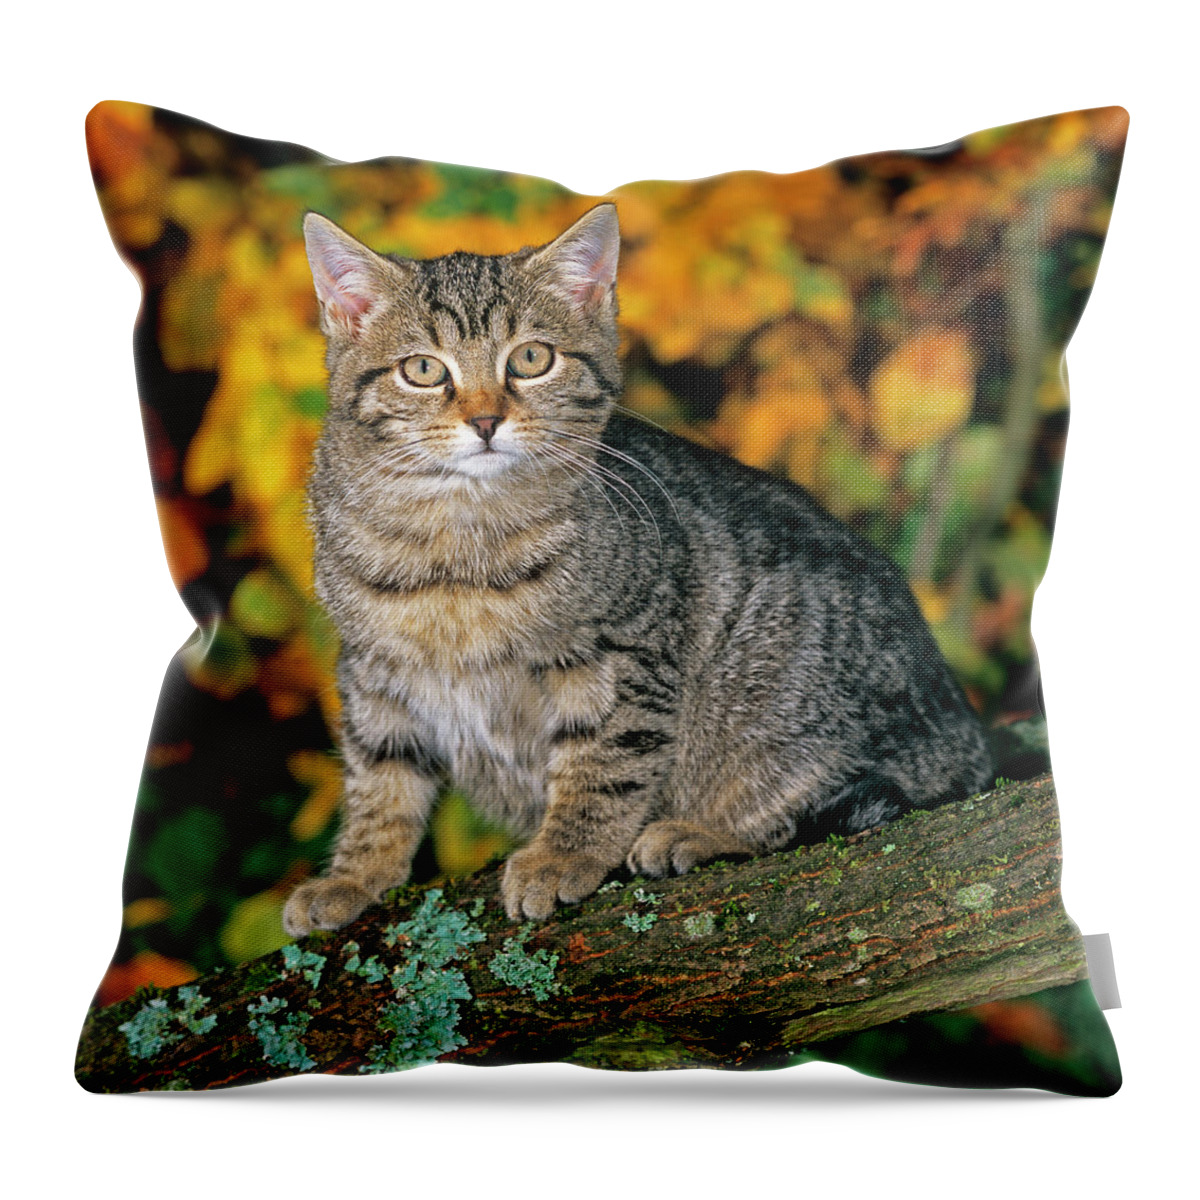 Estock Throw Pillow featuring the digital art Tomcat In Autumn by Robert Maier